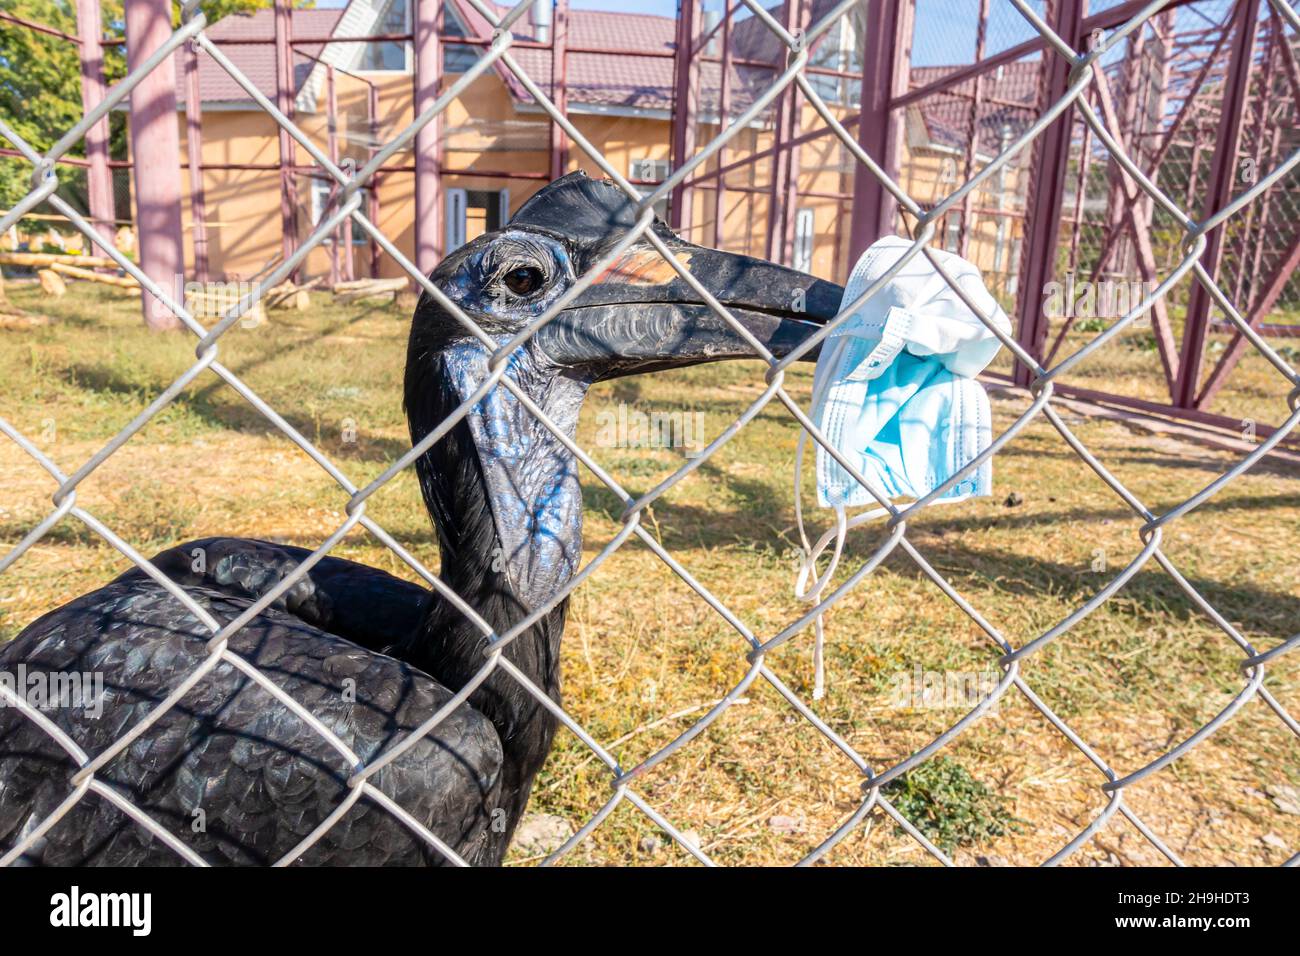 Abissiniano hornbill di terra o hornbill di terra settentrionale (Bucorvus abyssinicus), uccello con una maschera facciale nel suo becco. Zoo di Shymkent, Kazakhstan. R Foto Stock